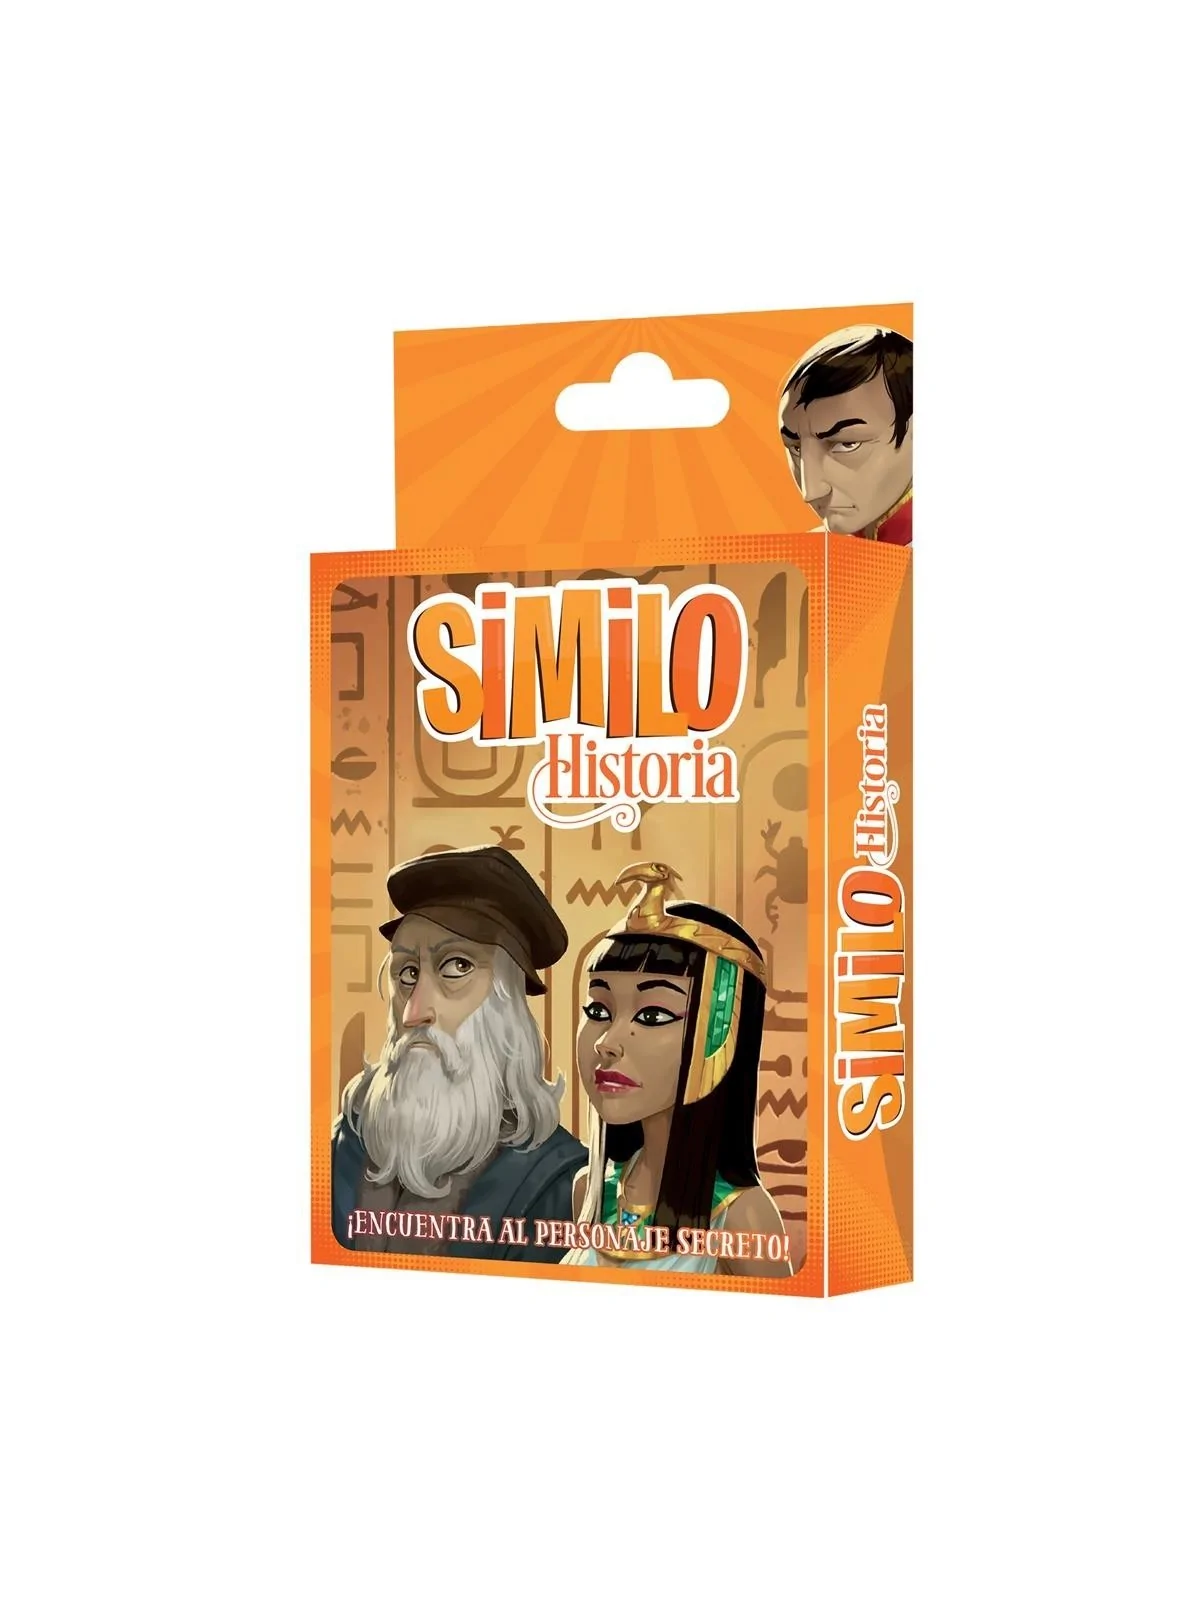 Comprar Similo Historia barato al mejor precio 8,99 € de Horrible Game